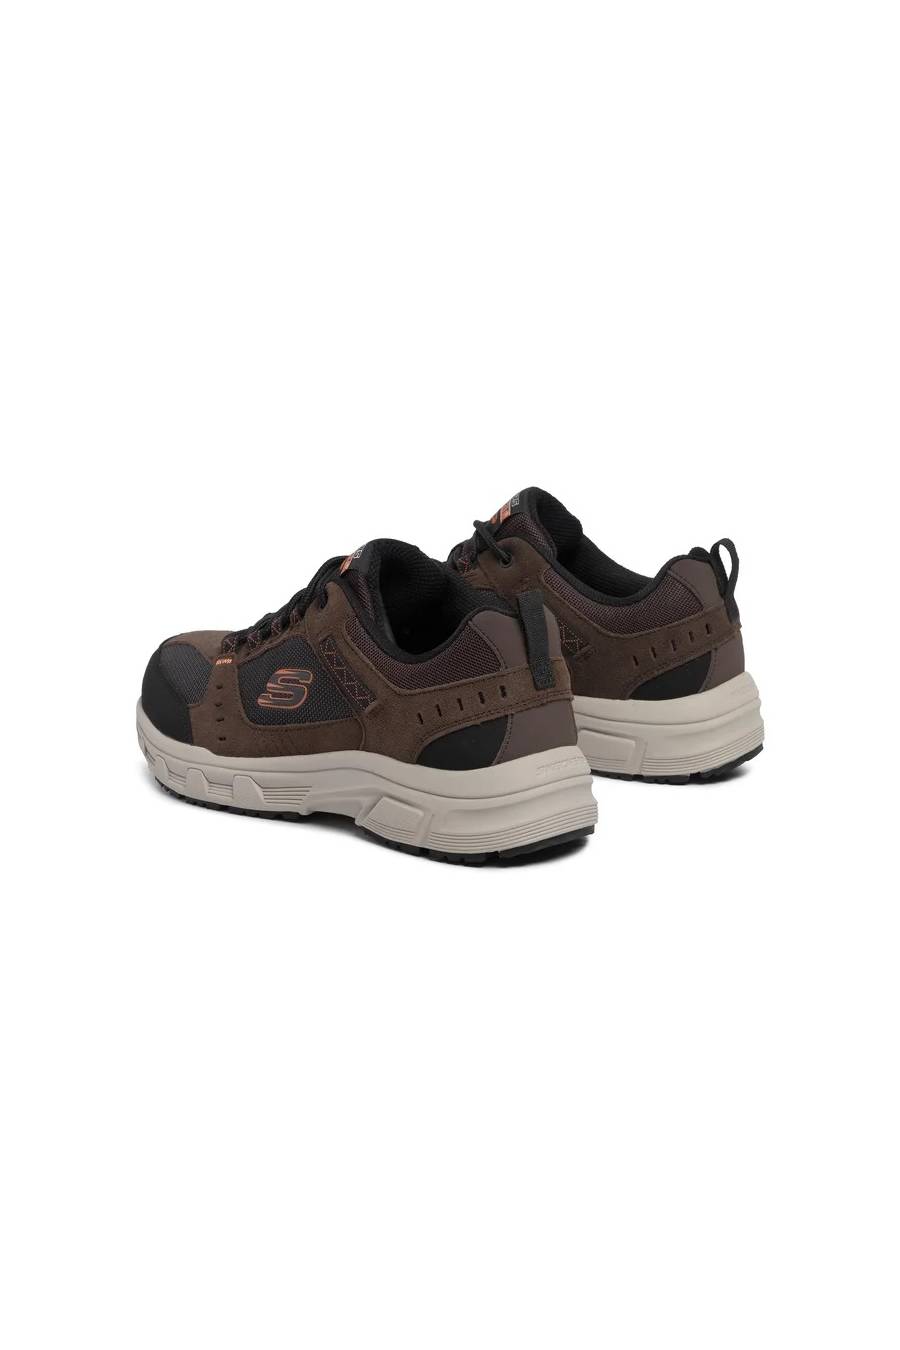 Zapatillas Skechers Oak Canyon 51893-CHBK